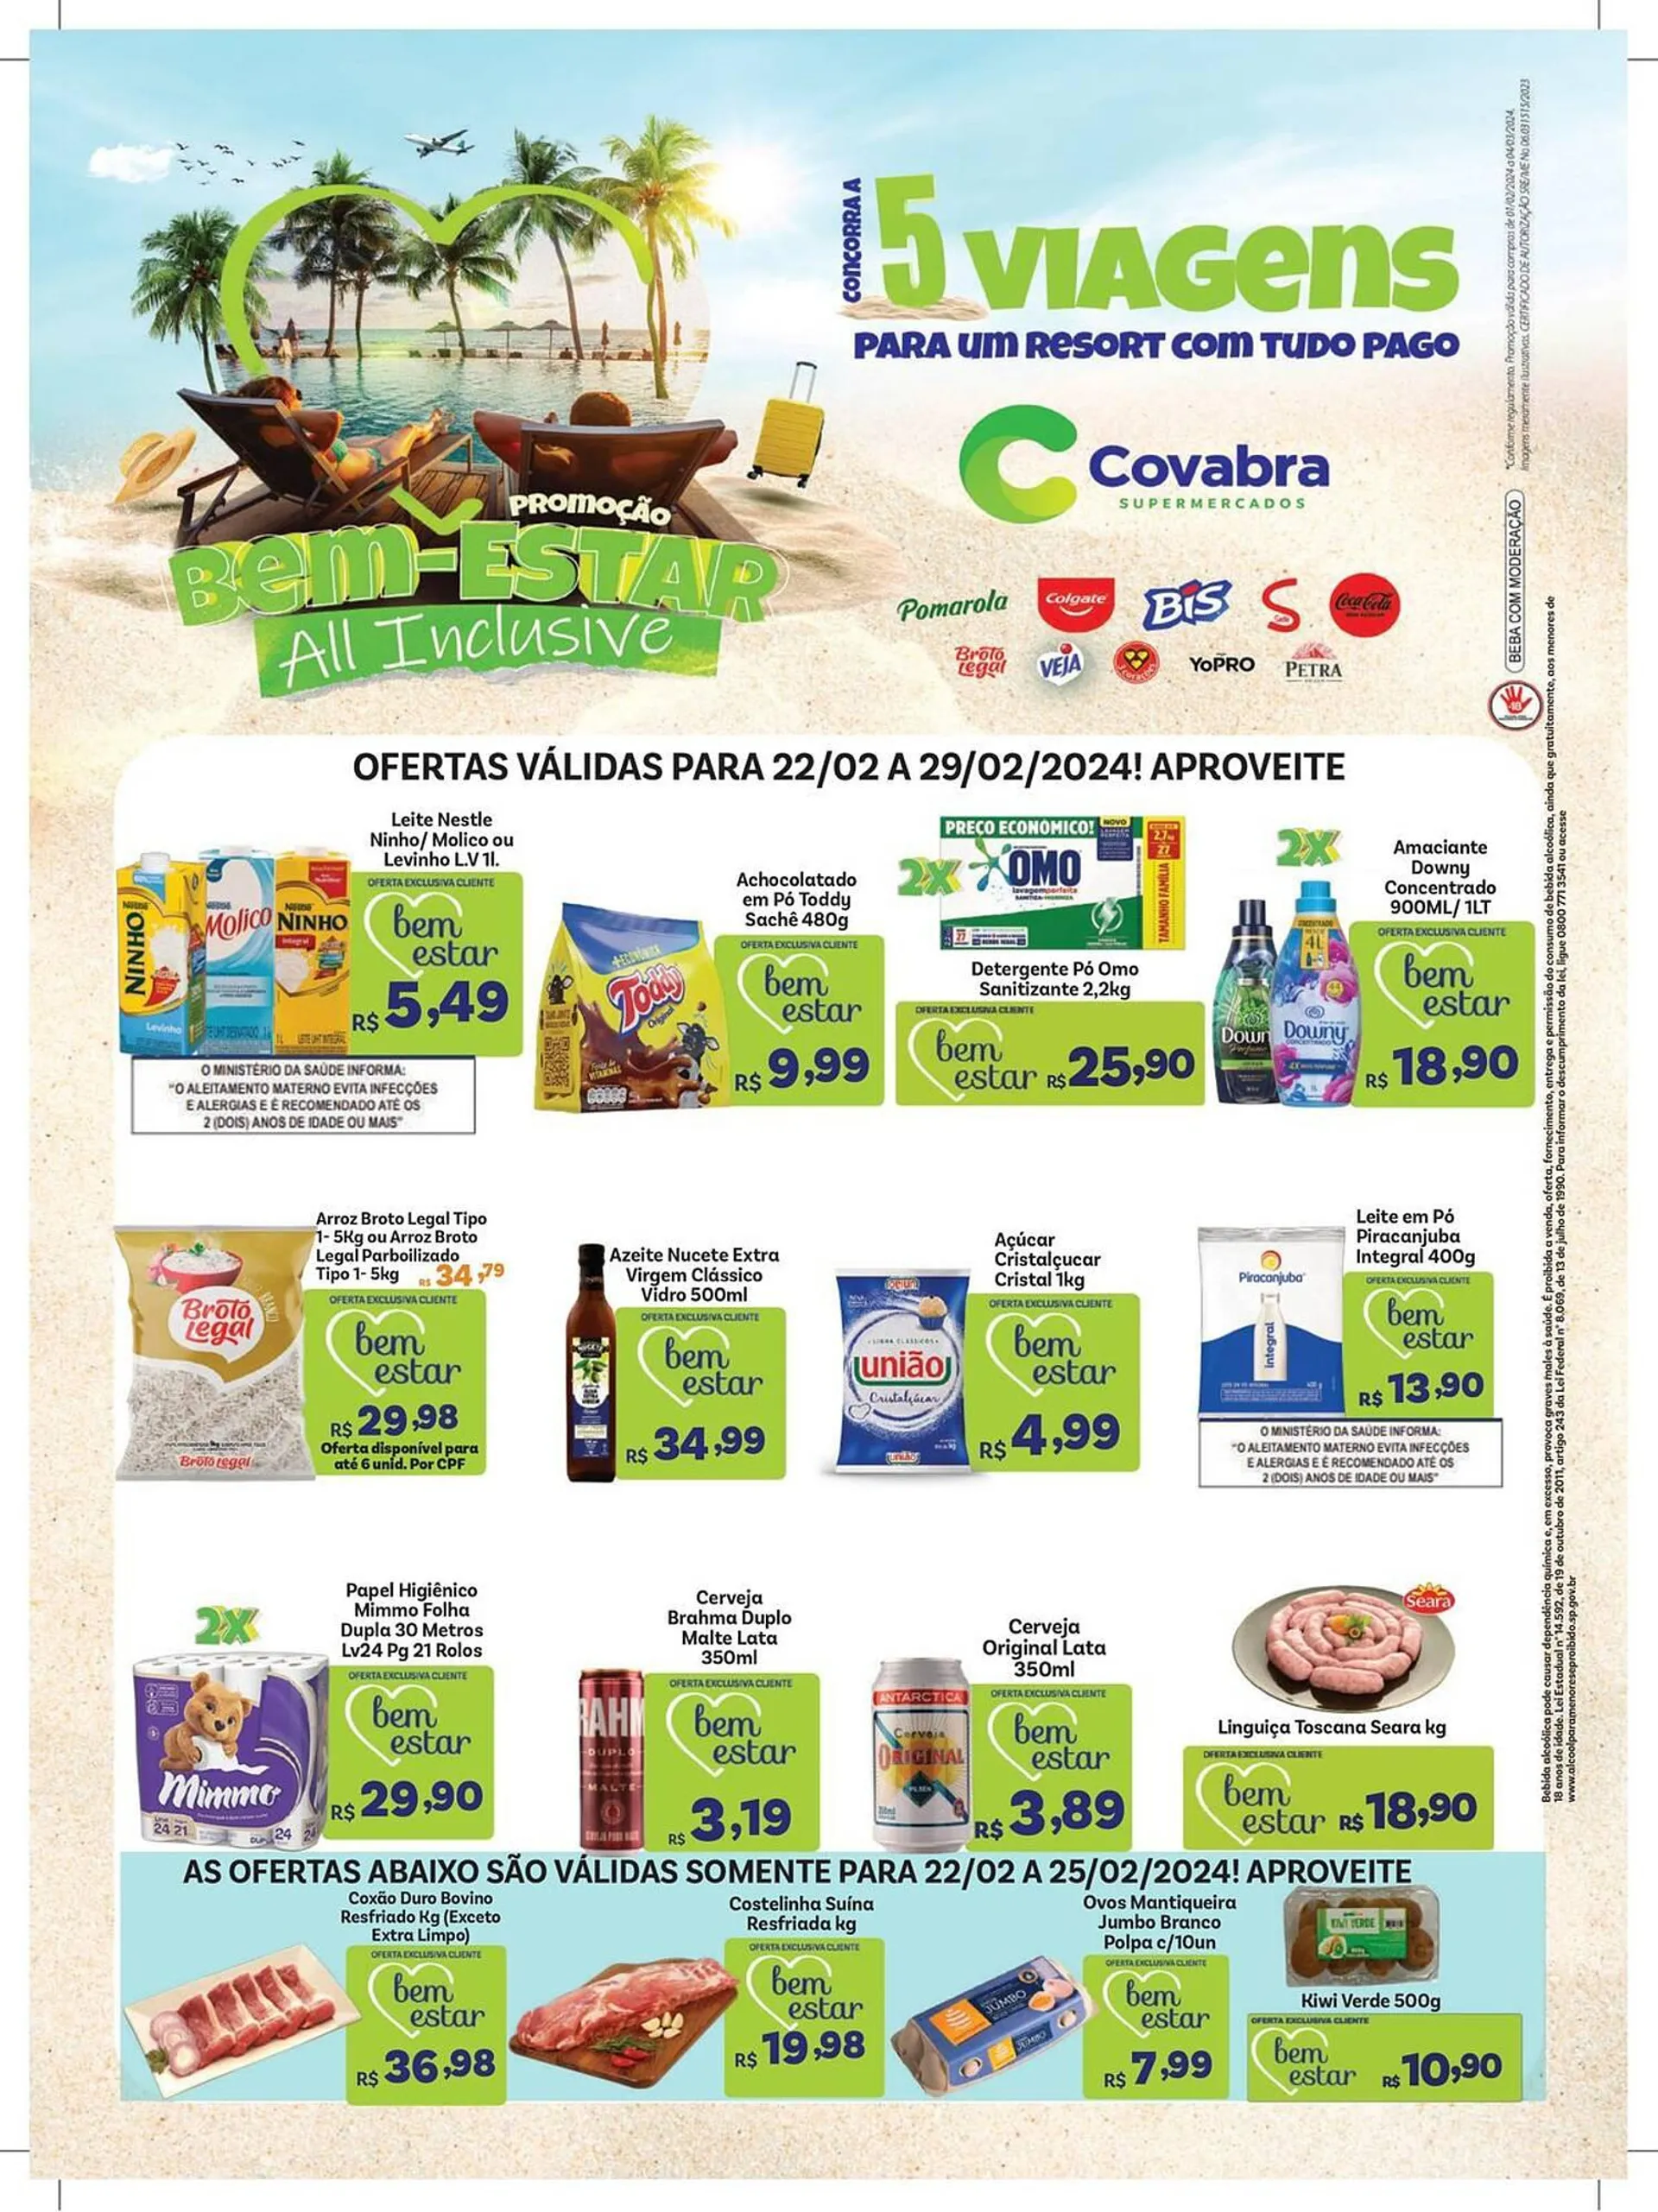 Encarte de Catálogo Covabra Supermercados 23 de fevereiro até 29 de fevereiro 2024 - Pagina 